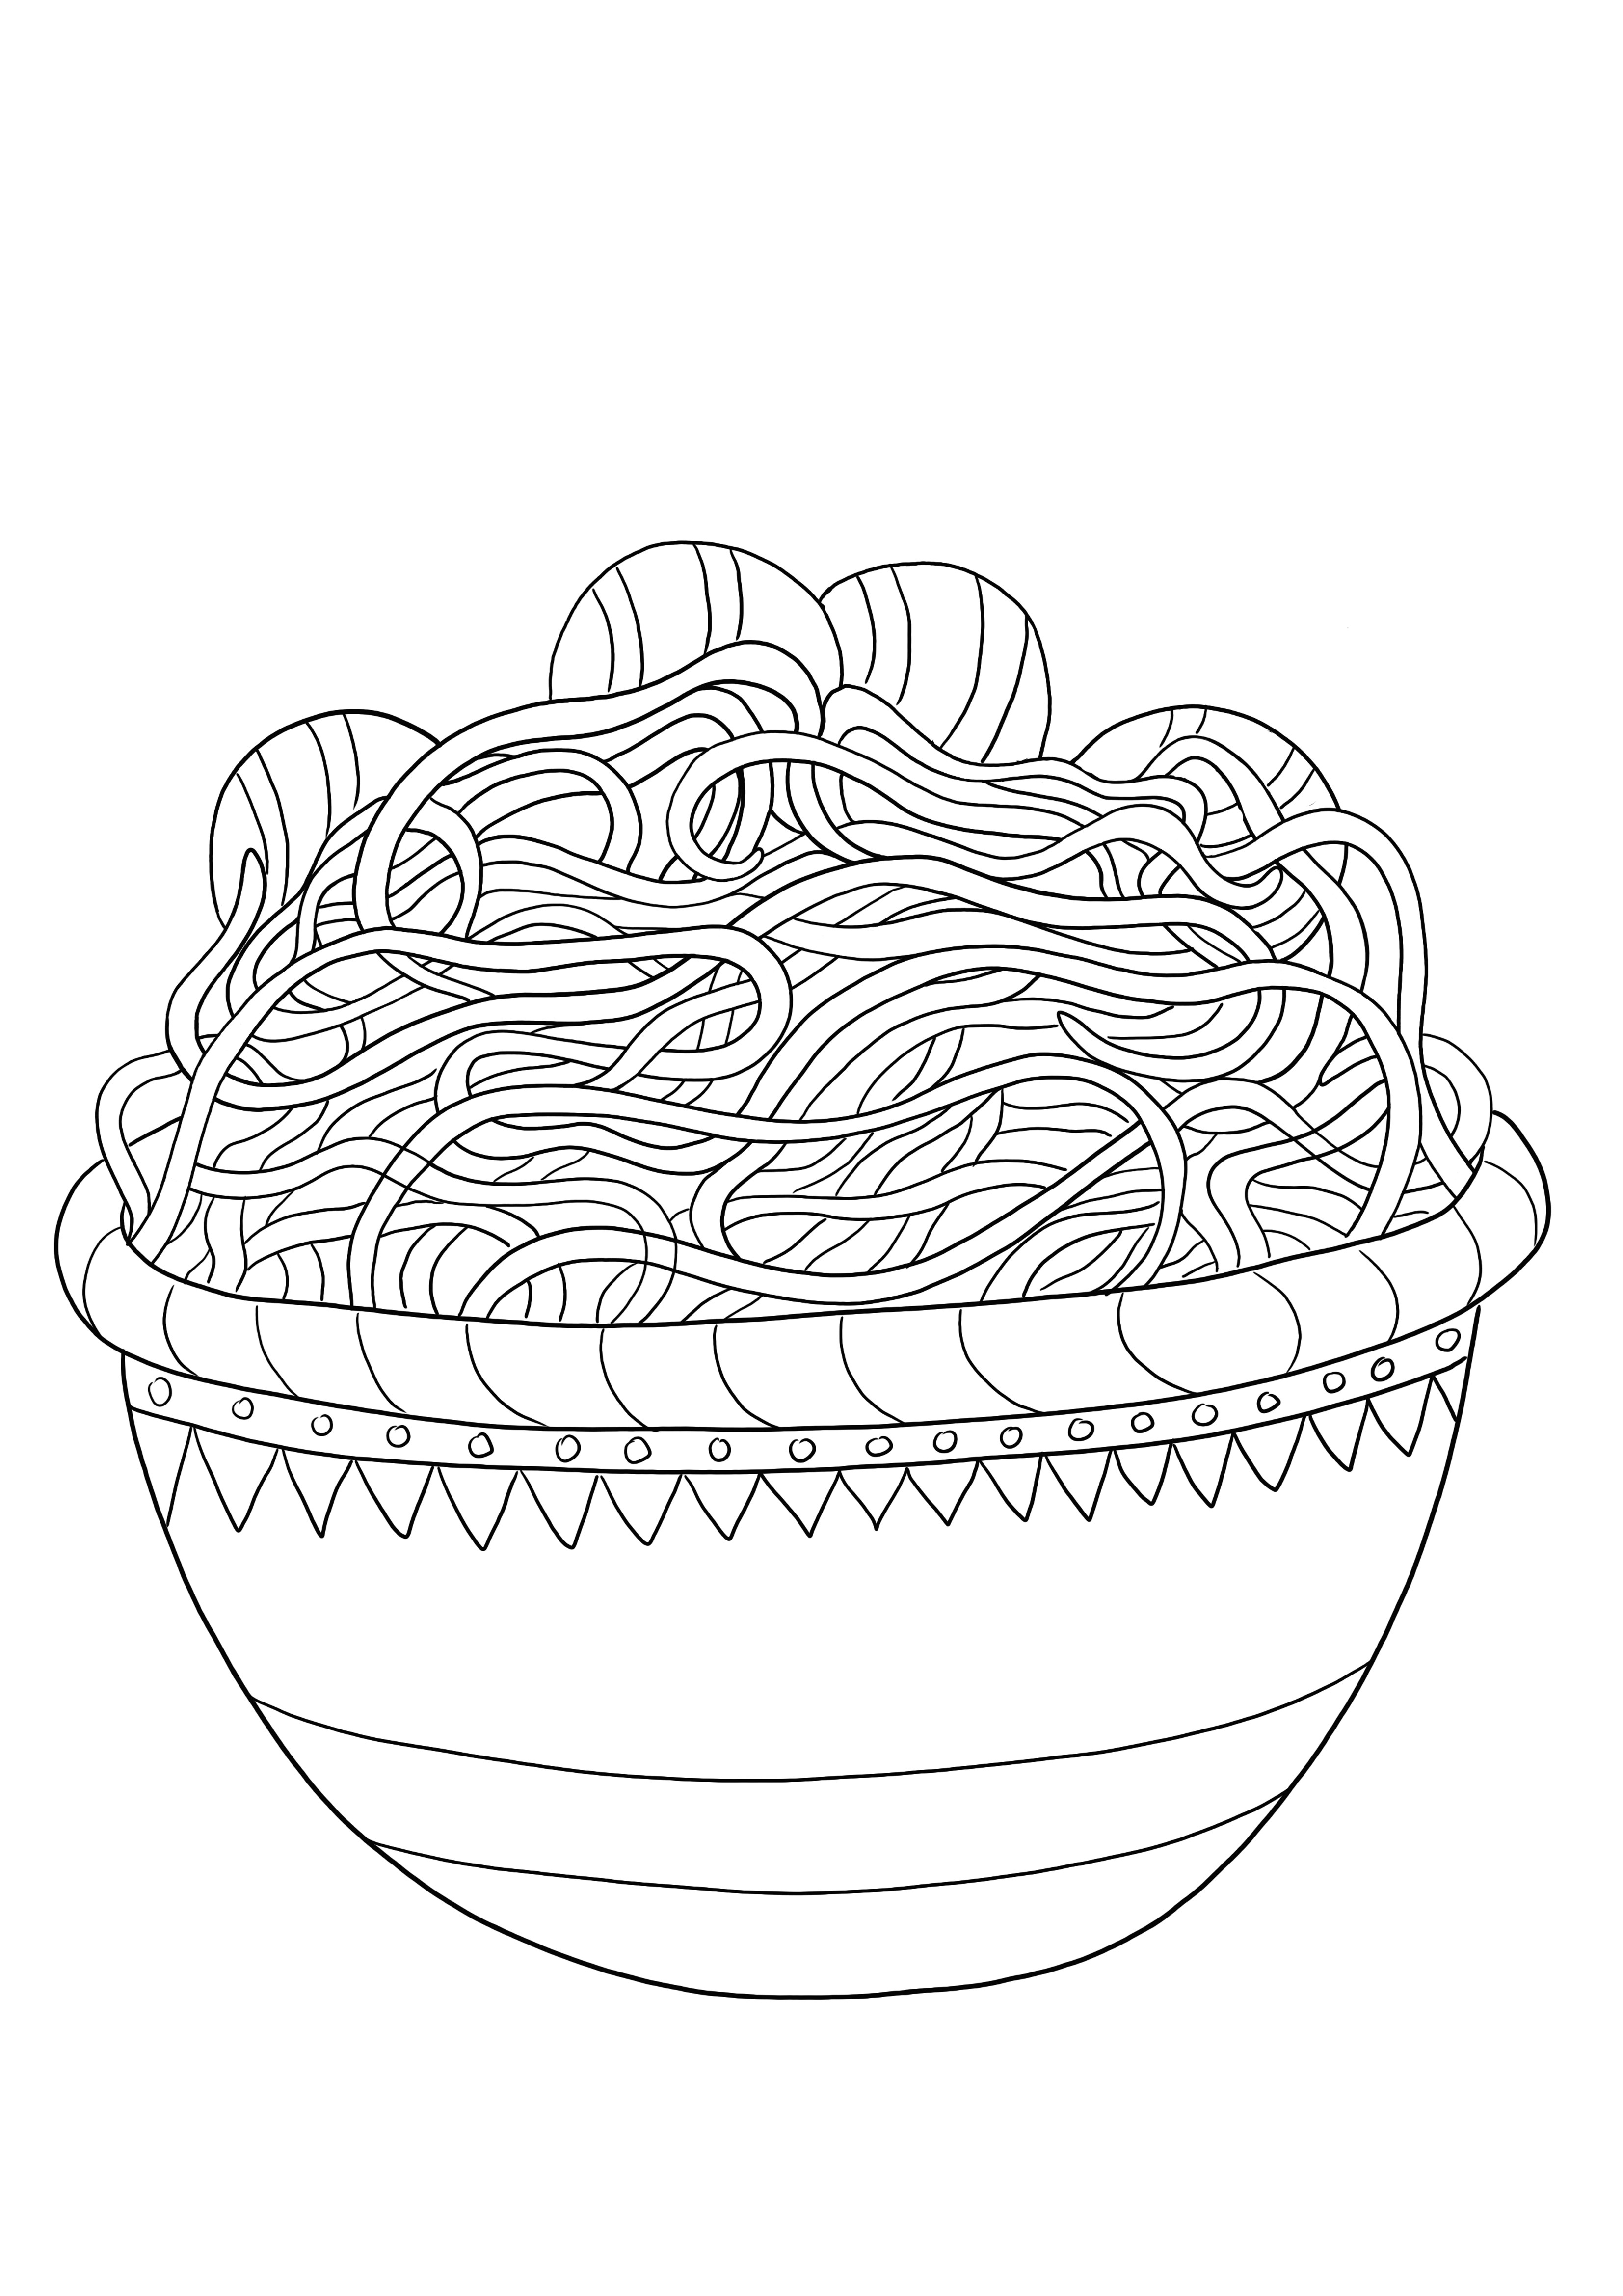 Darmowy obraz do wydrukowania dla łatwego kolorowania miski spaghetti dla dzieci